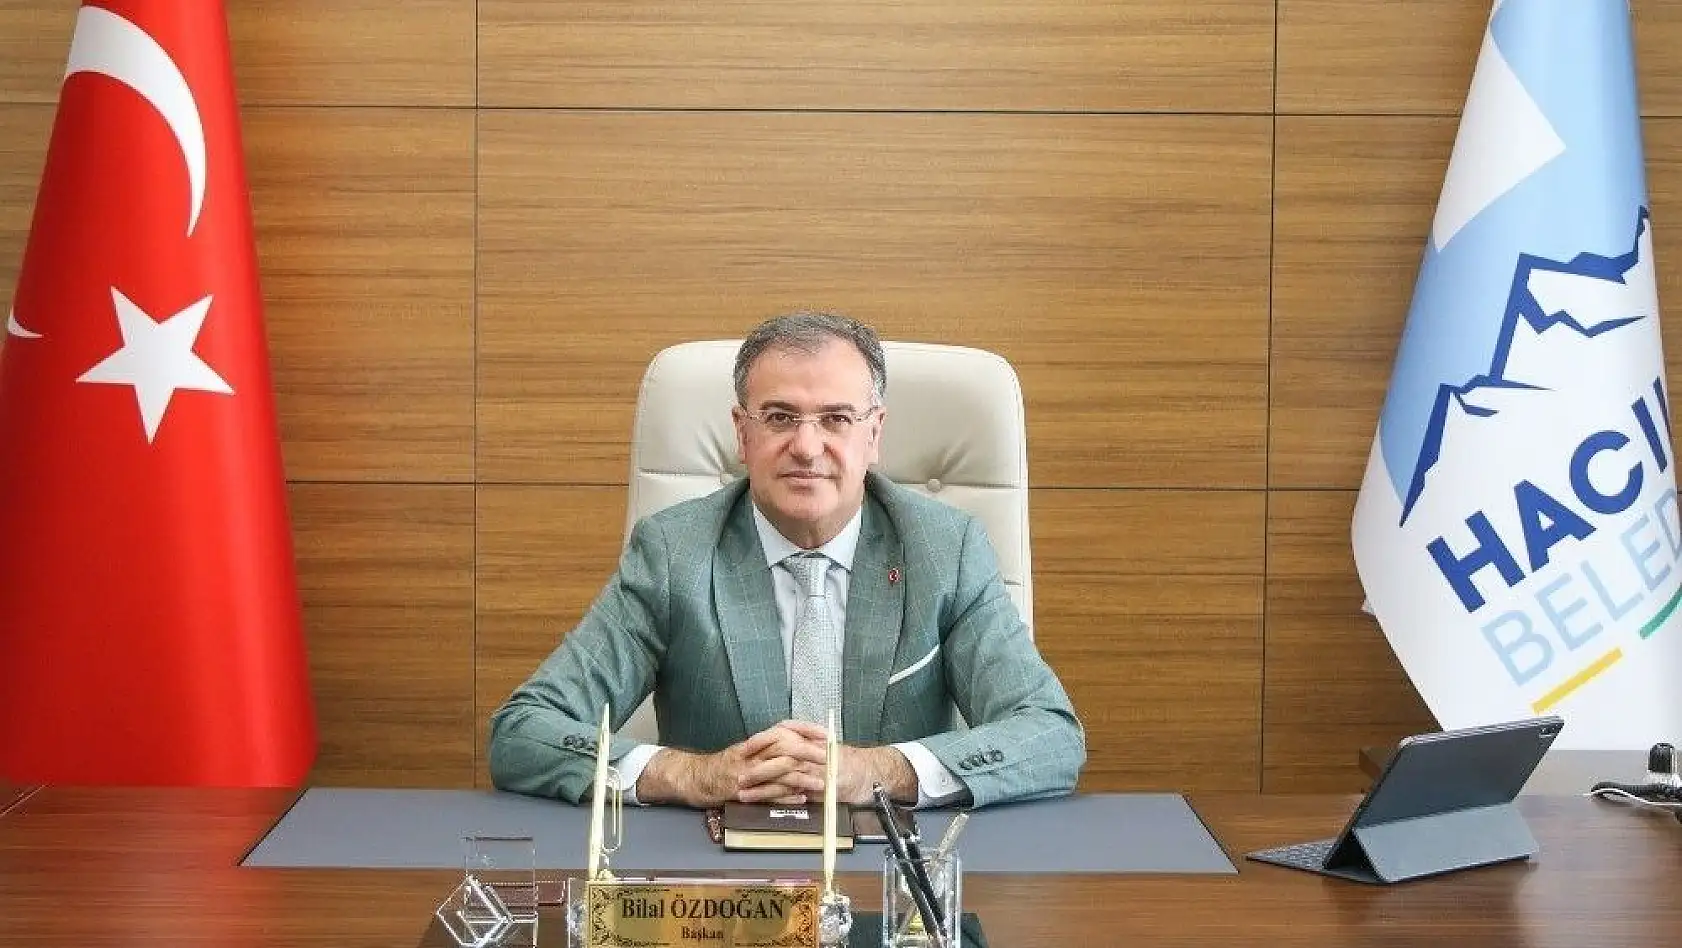 Hacılar Belediye Başkanı Özdoğan'dan 30 Ağustos mesajı